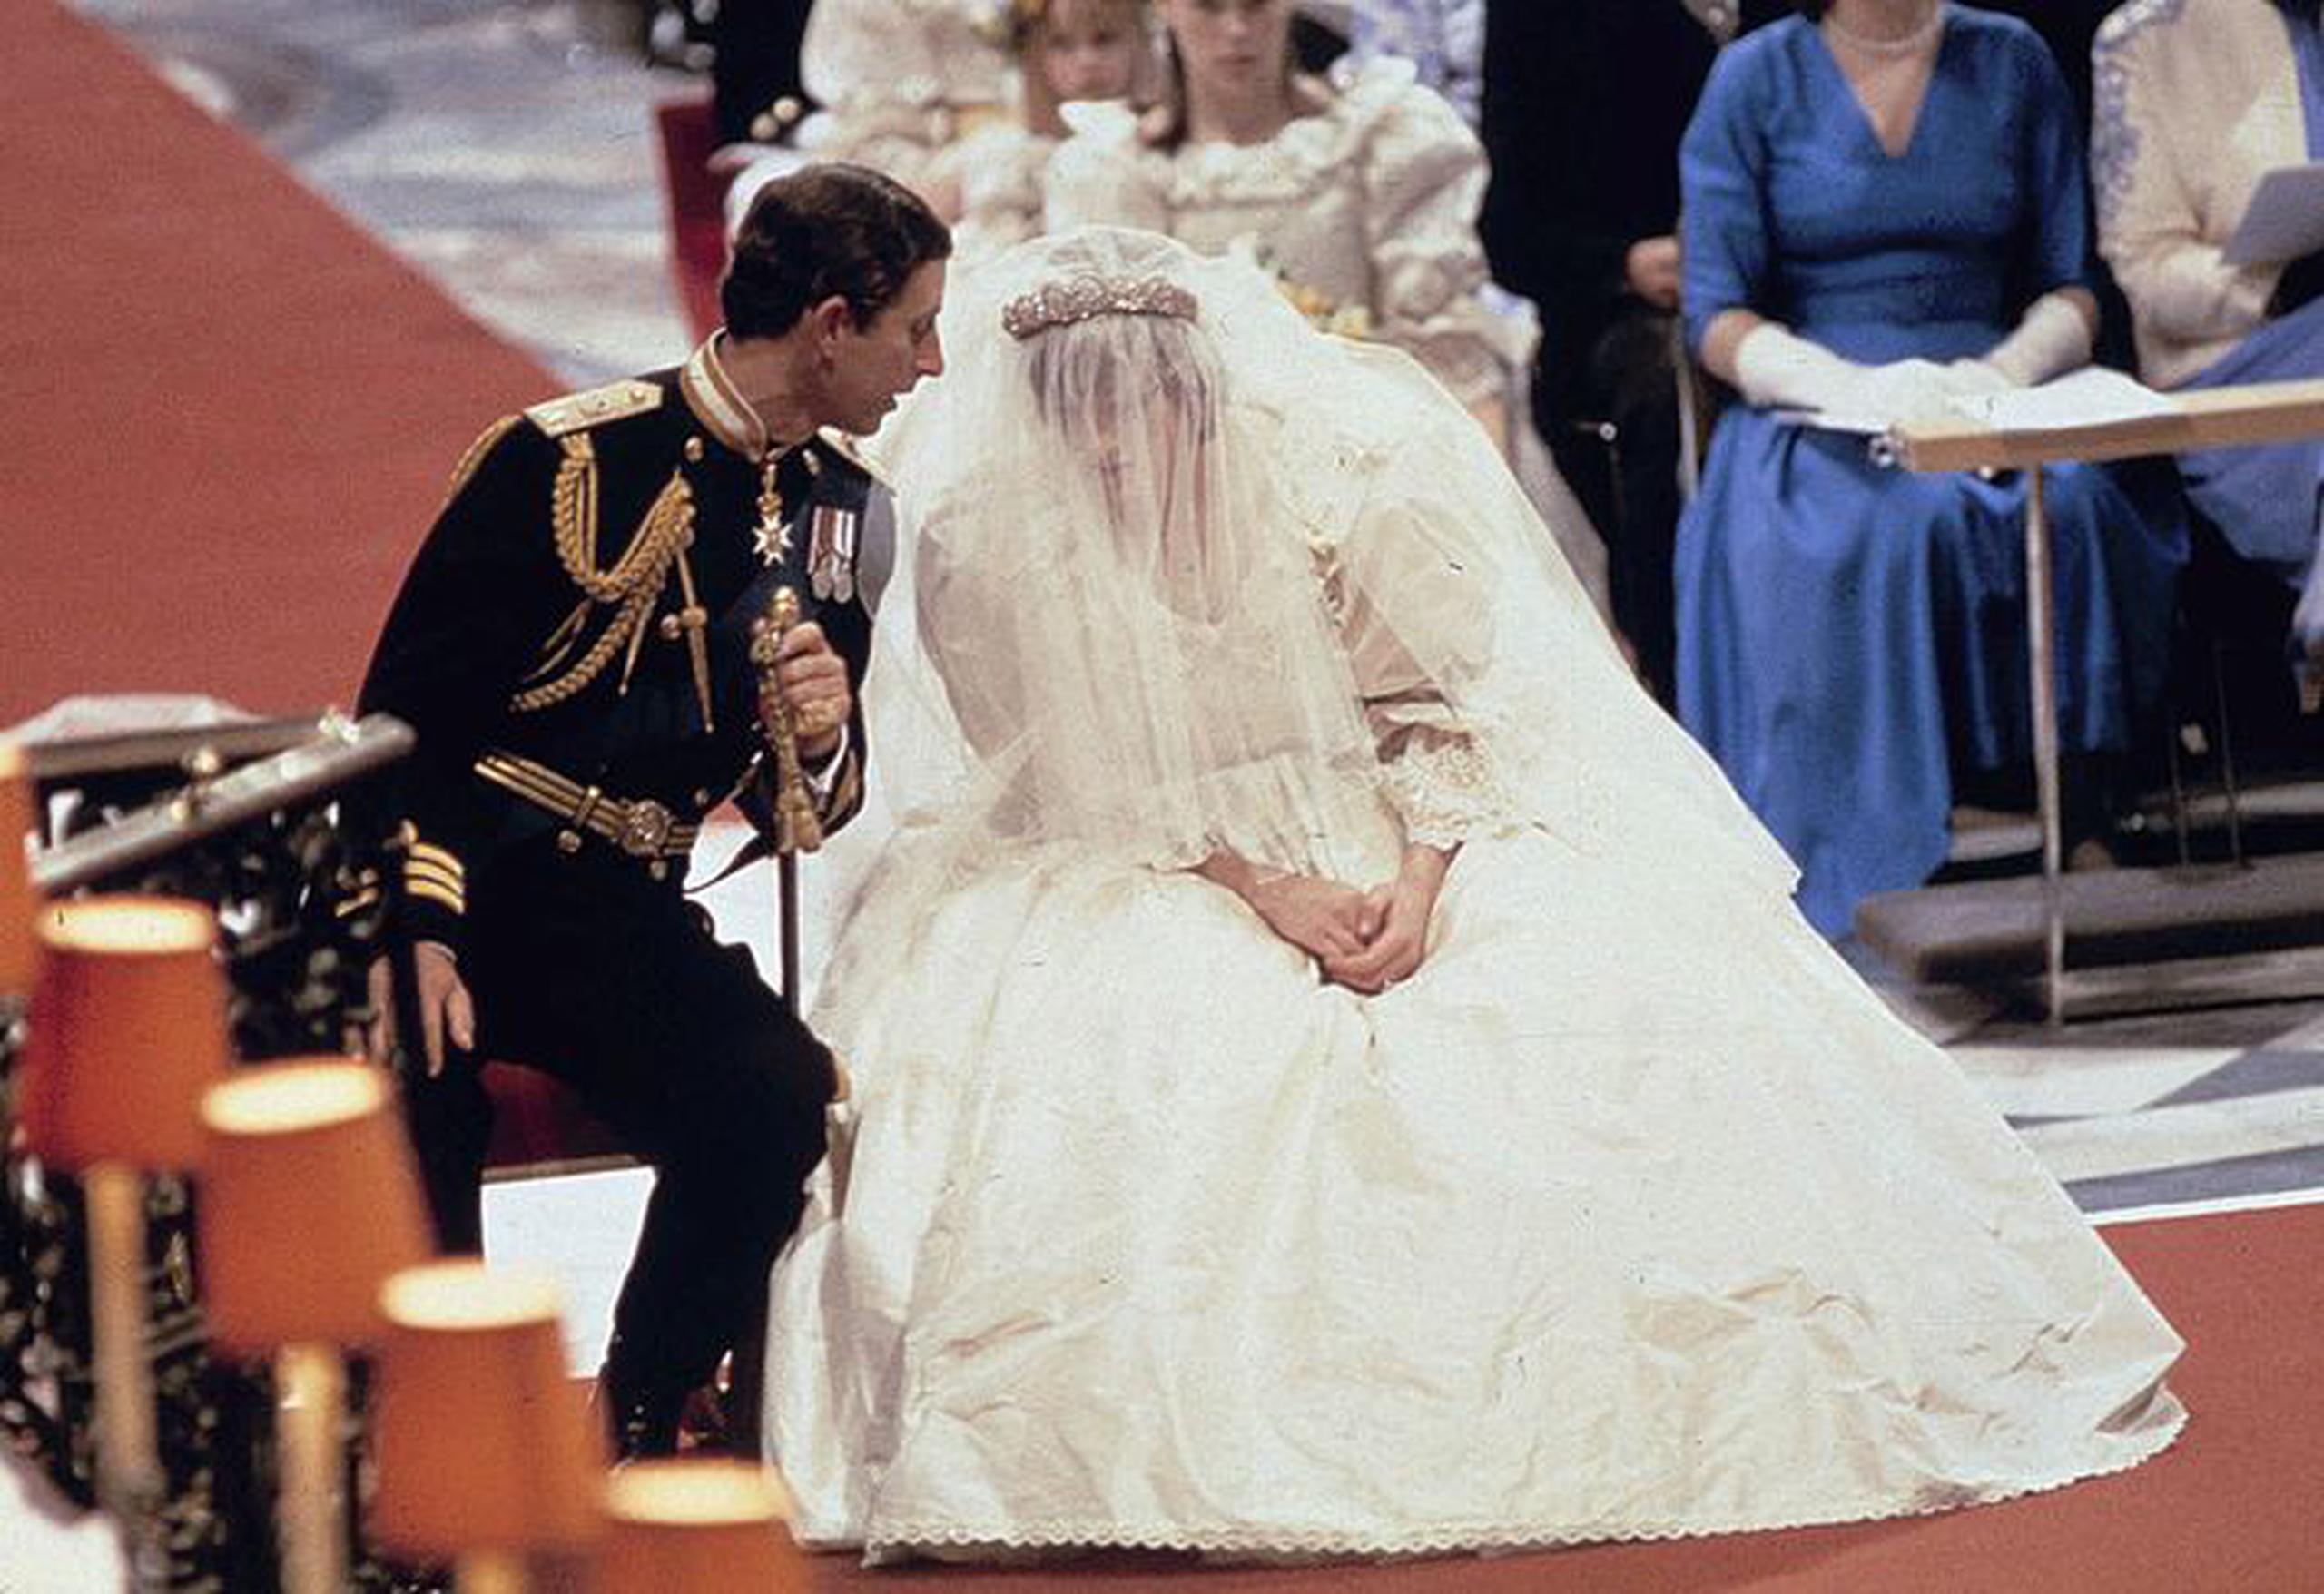 La boda de 1981 de Diana con el príncipe Charles fue observada por cientos de millones de personas en todo el mundo, y no podía haber llevado un vestido más suntuoso para la ocasión. El vestido de tafetán de seda con una cola de 7,5 metros  confeccionada por David y Elizabeth Emanuel llevaba grandes mangas, encajes y 10.000 lentejuelas de perla. (AP)